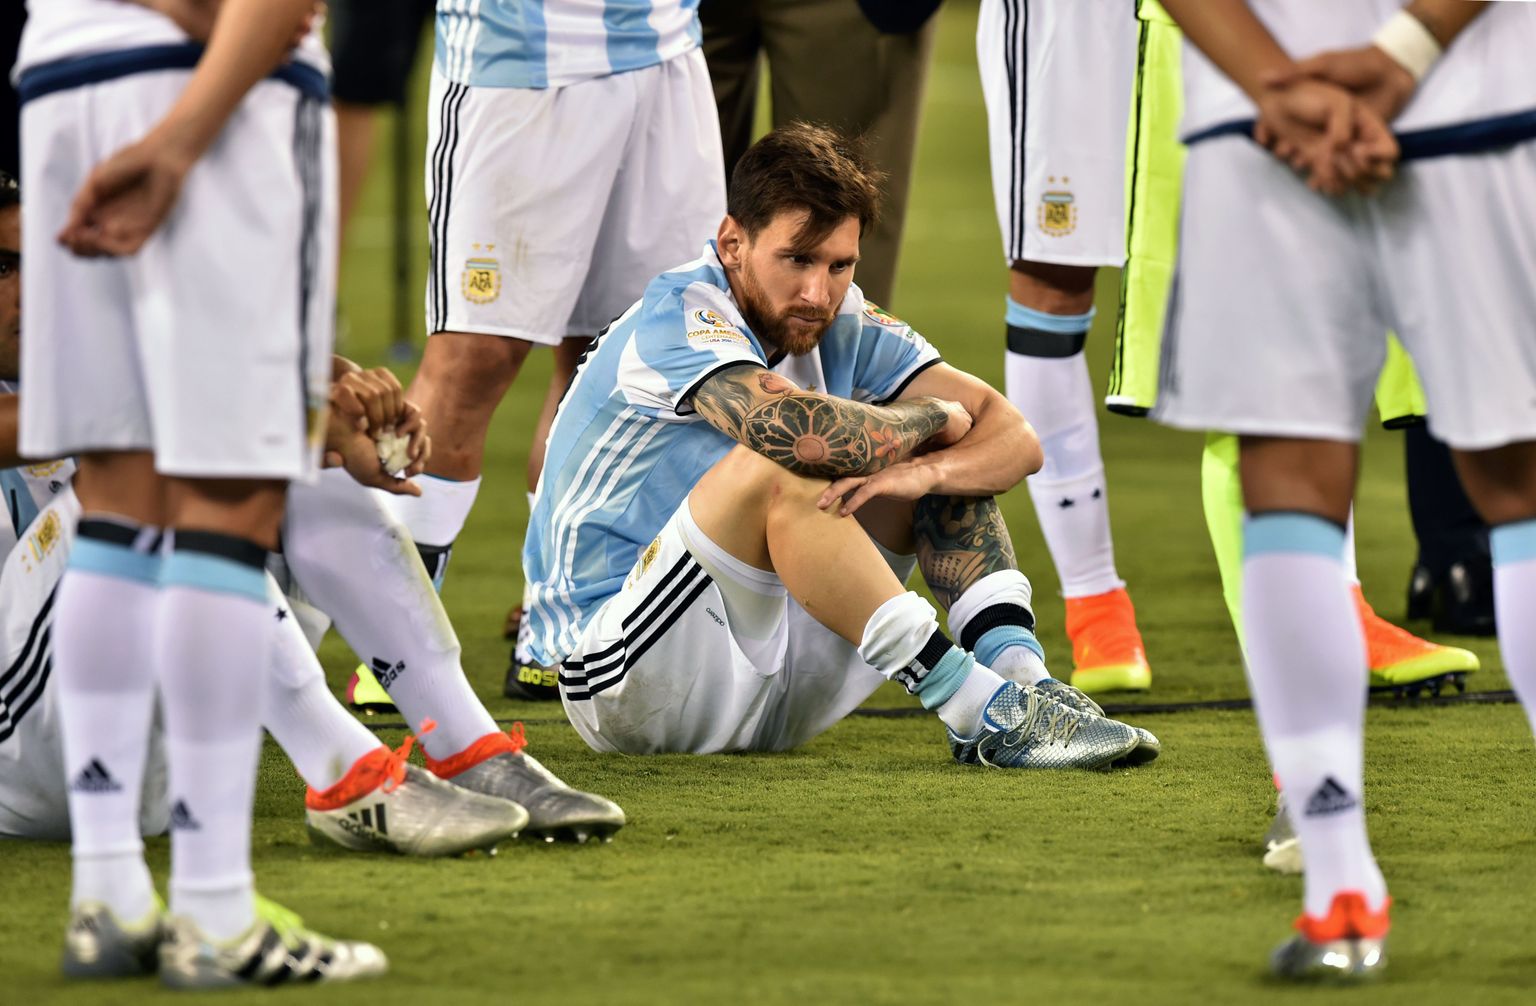 Kui Lionel Messi loobumisotsuse jõusse jätab, jääbki tal Argentina koondisega karikas võitmata.